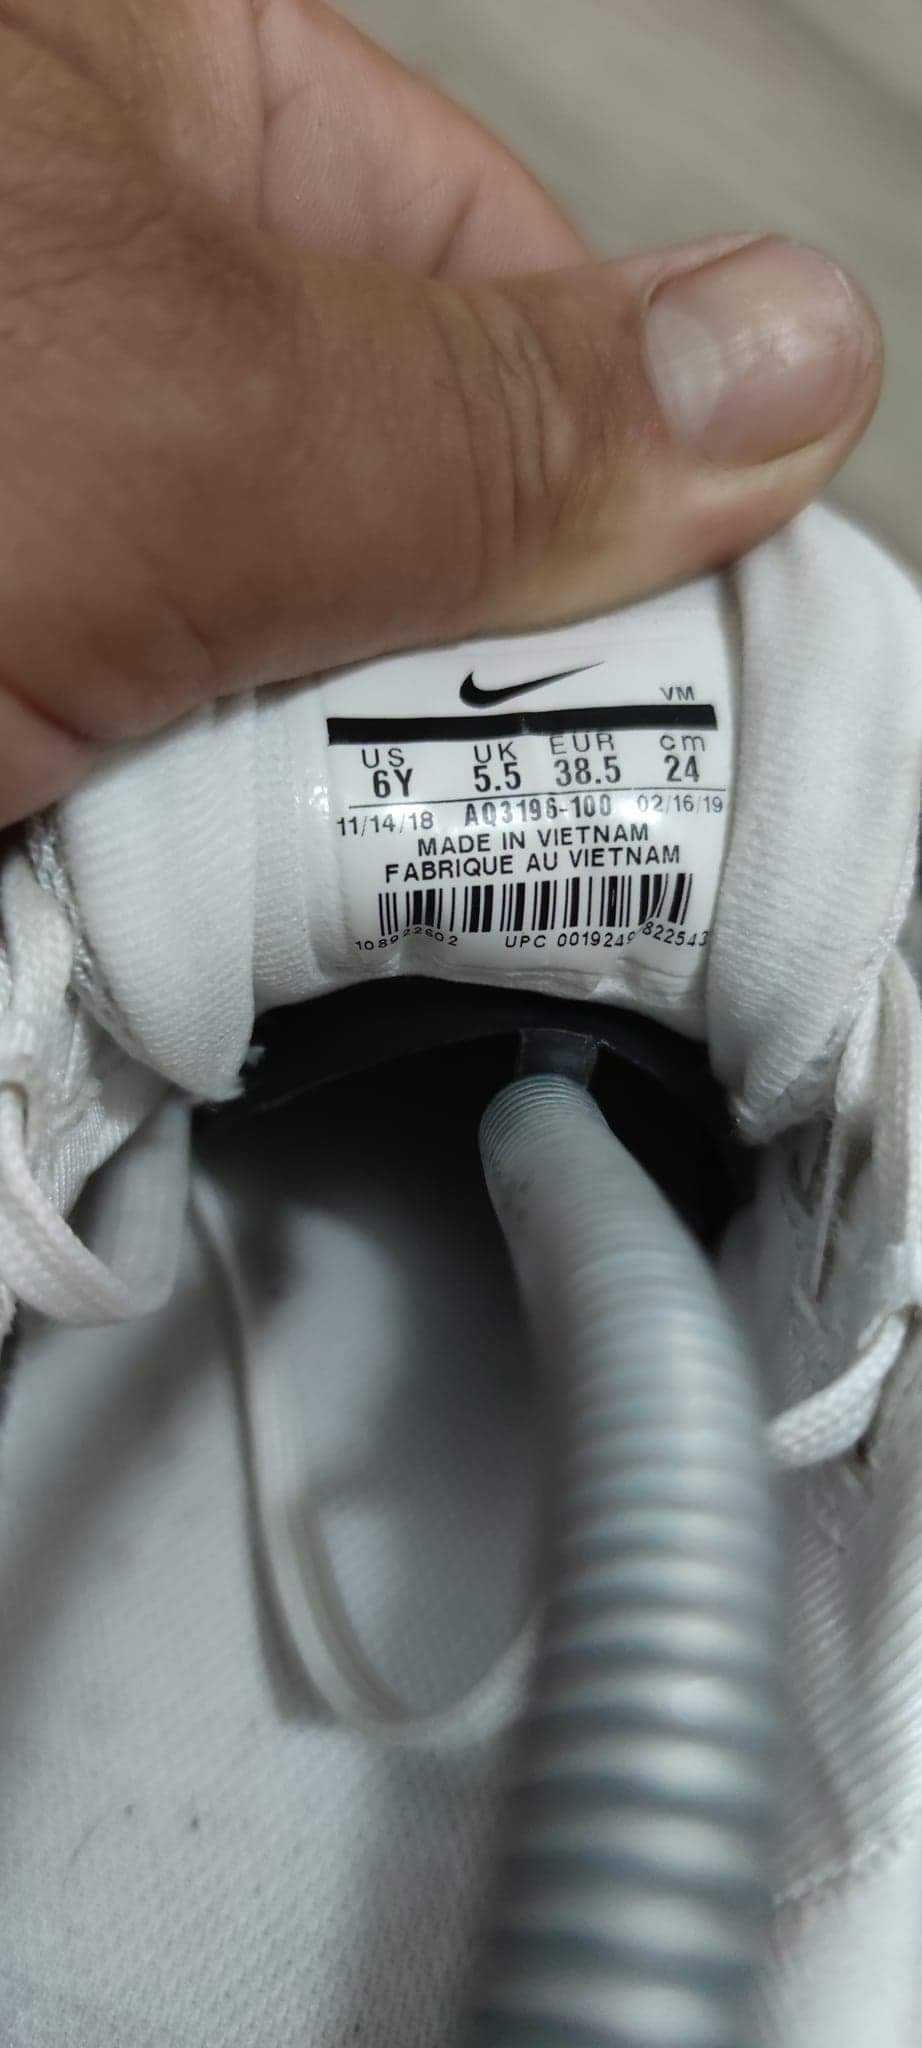 Adidași Nike marimea 38.5